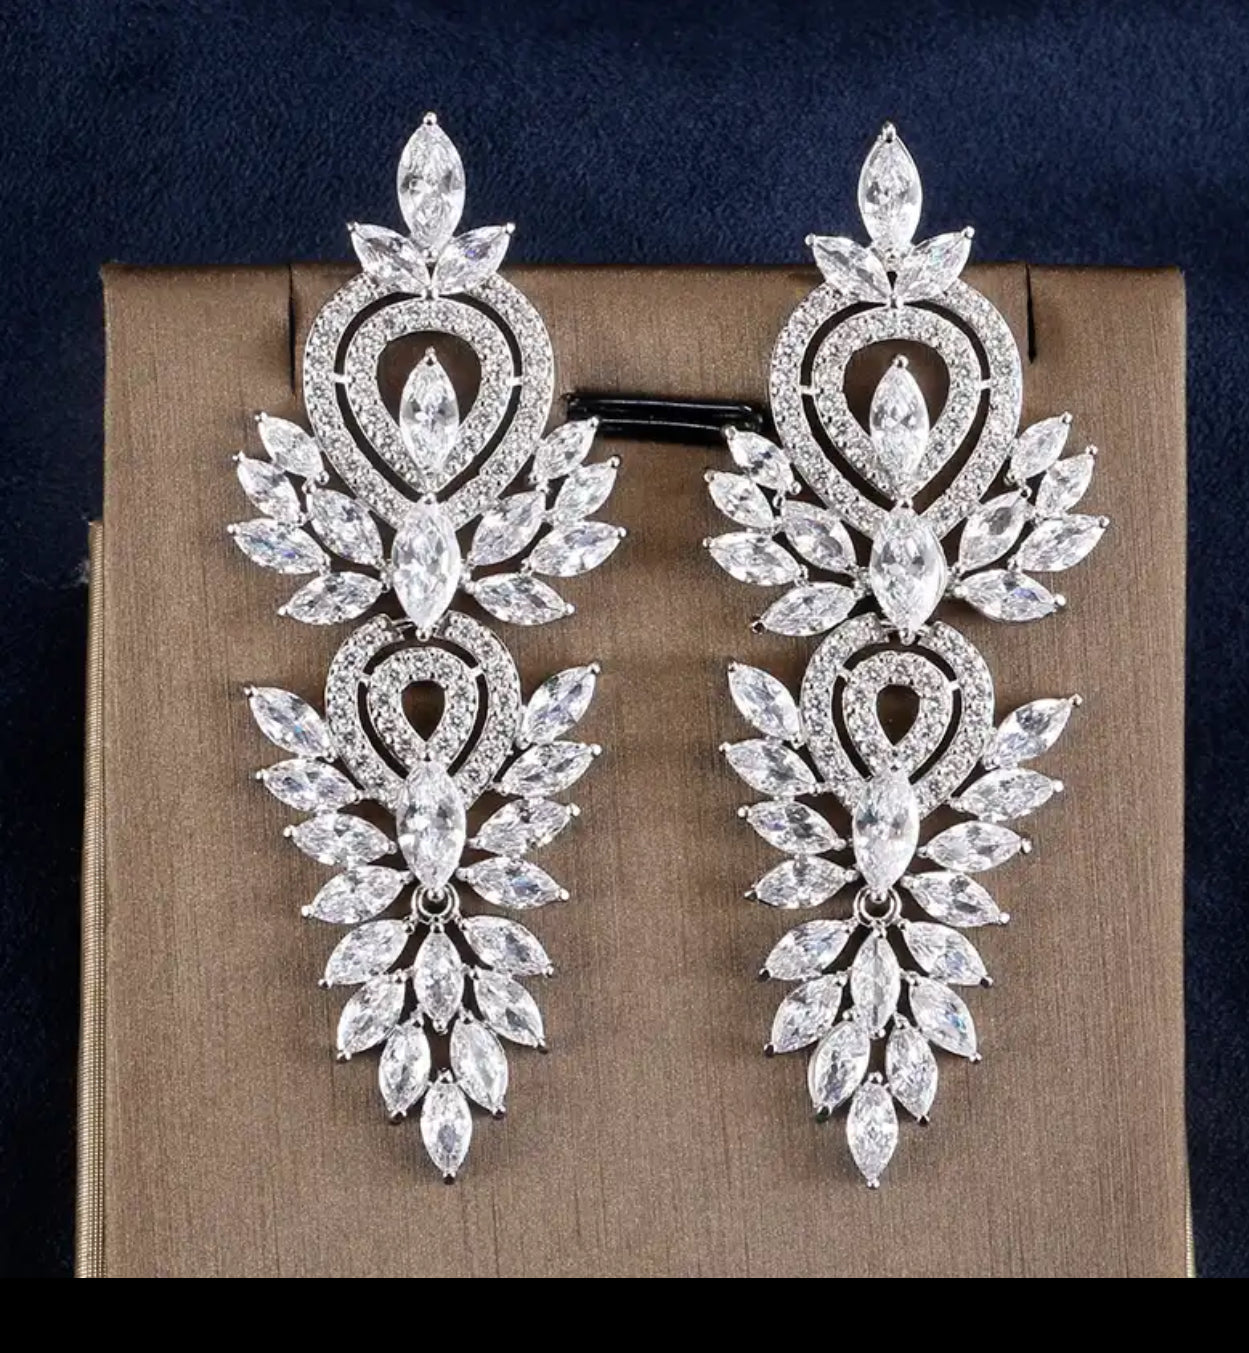 Rhinestone Chandelier Earrings